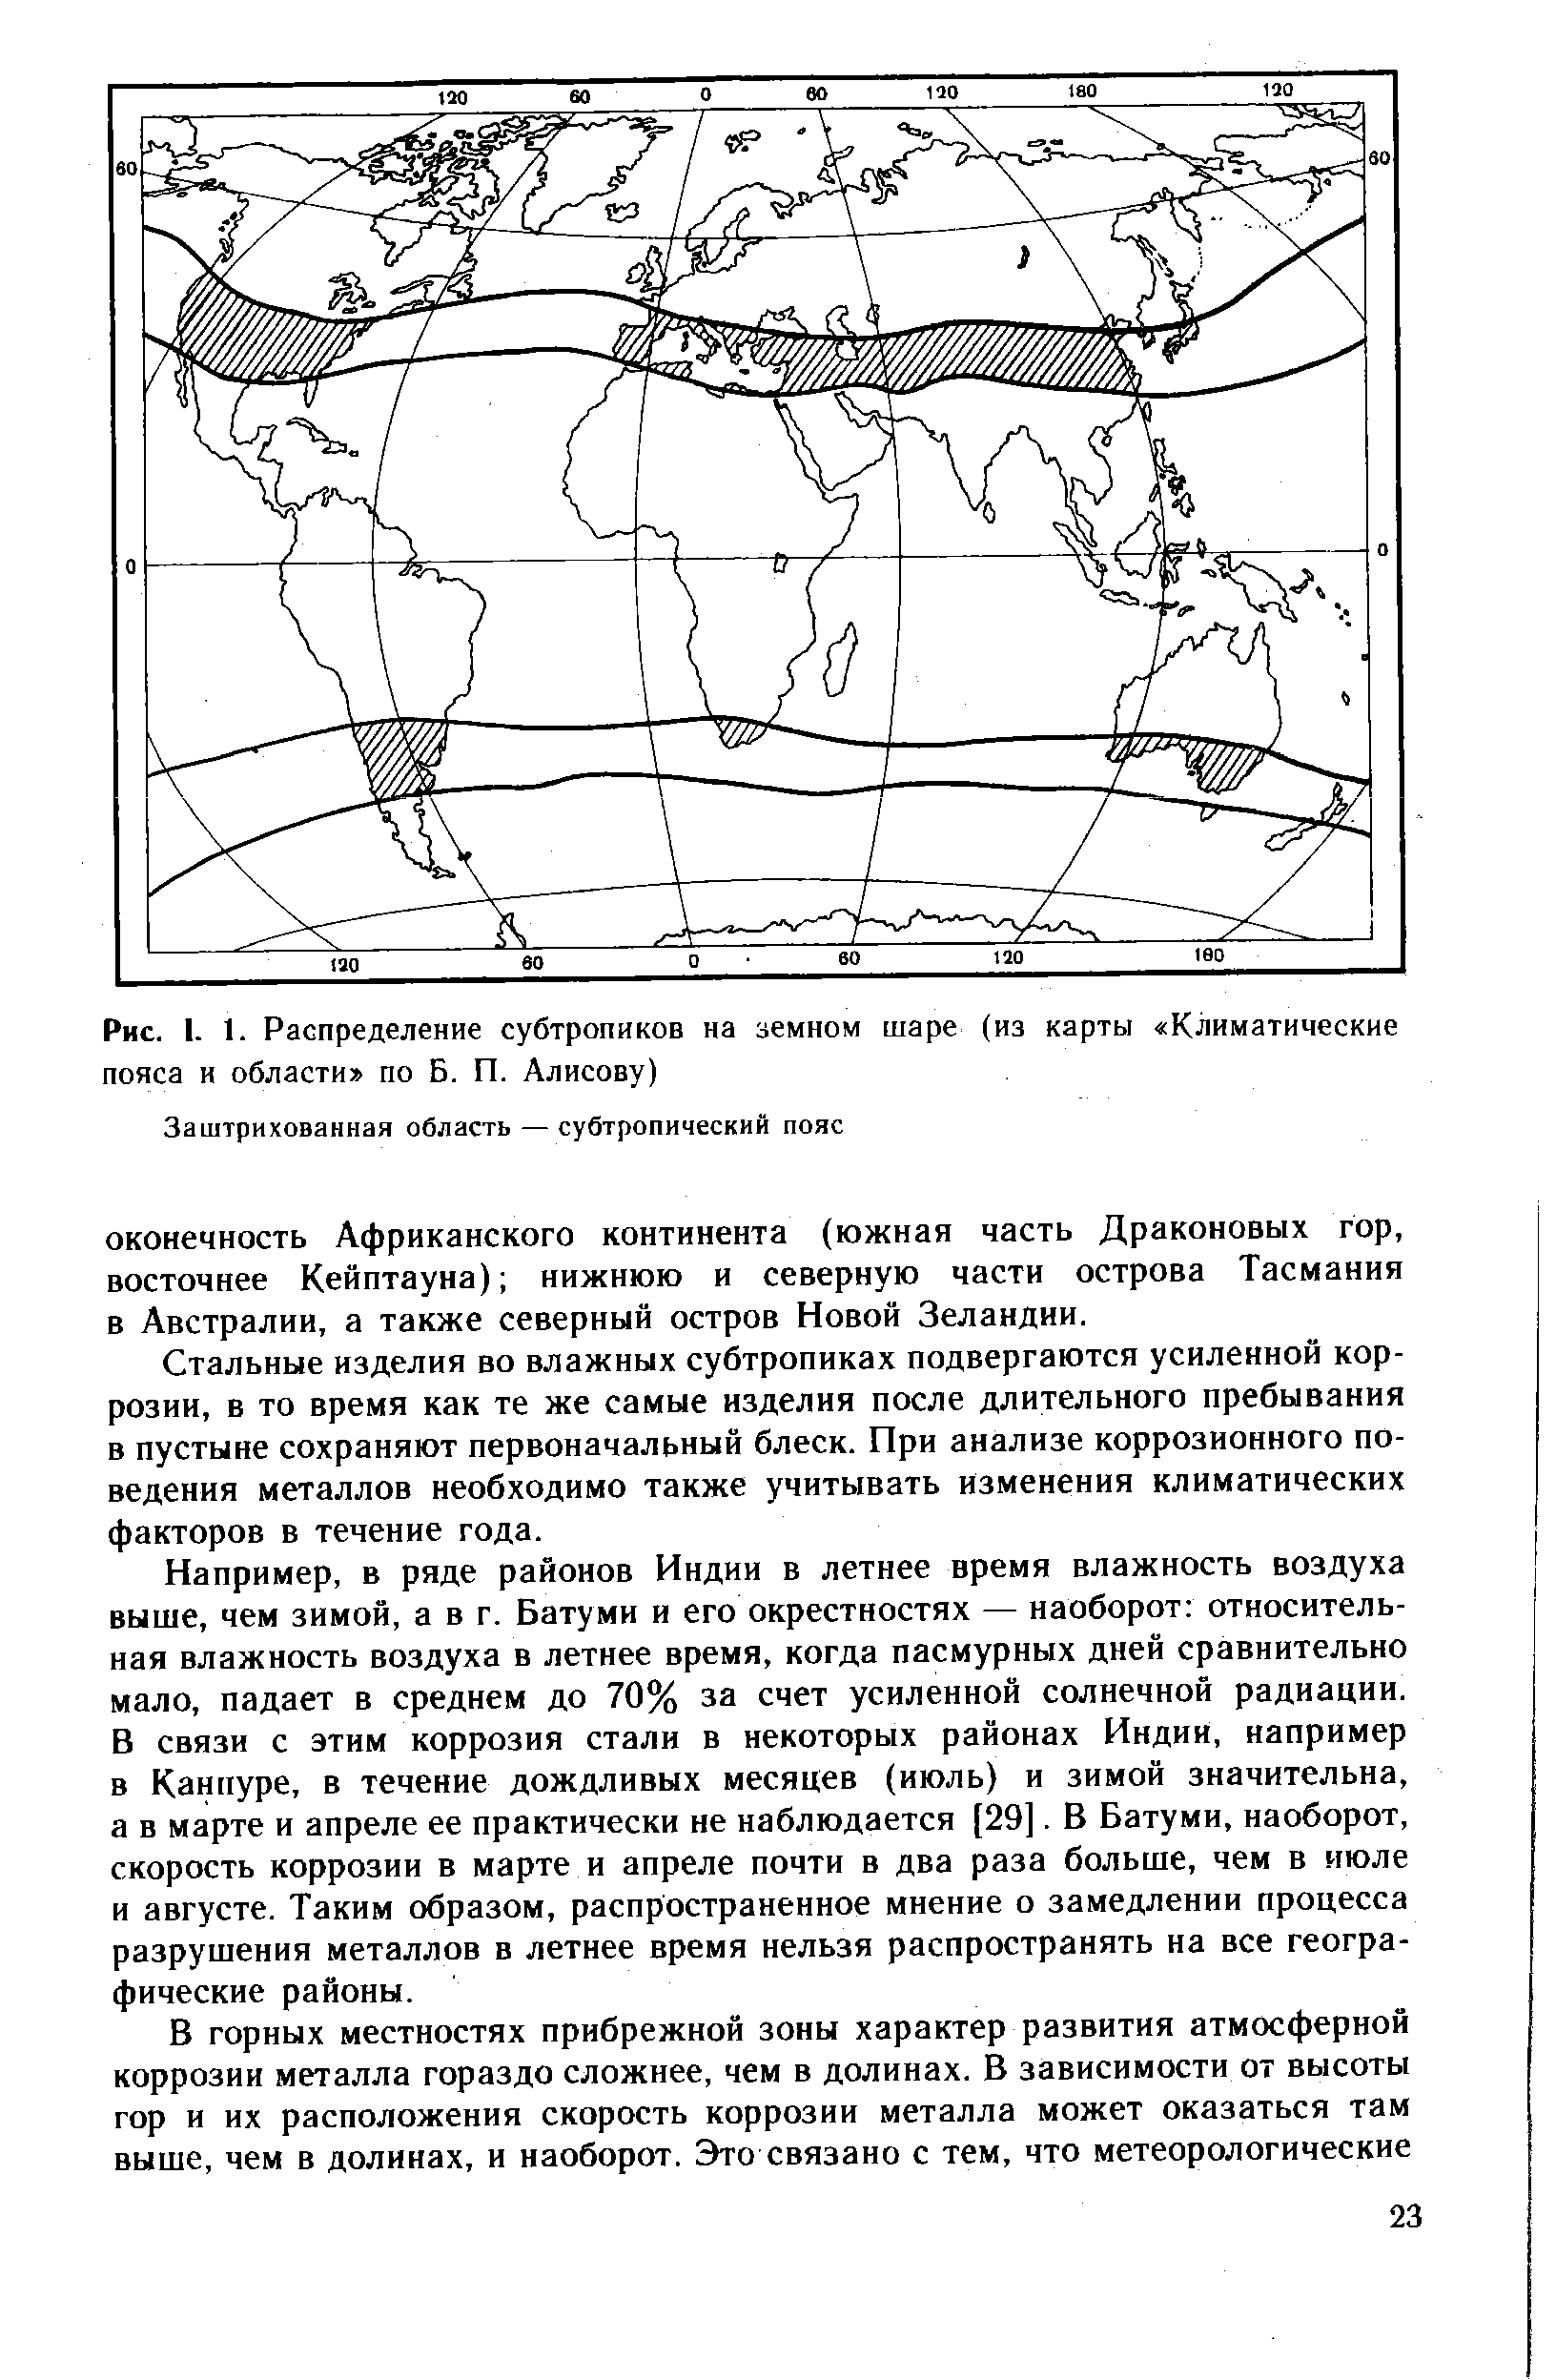 Рис. I. 1. Распределение субтропиков на земном шаре (из карты Климатические пояса и области по Б. П. Алисову)
